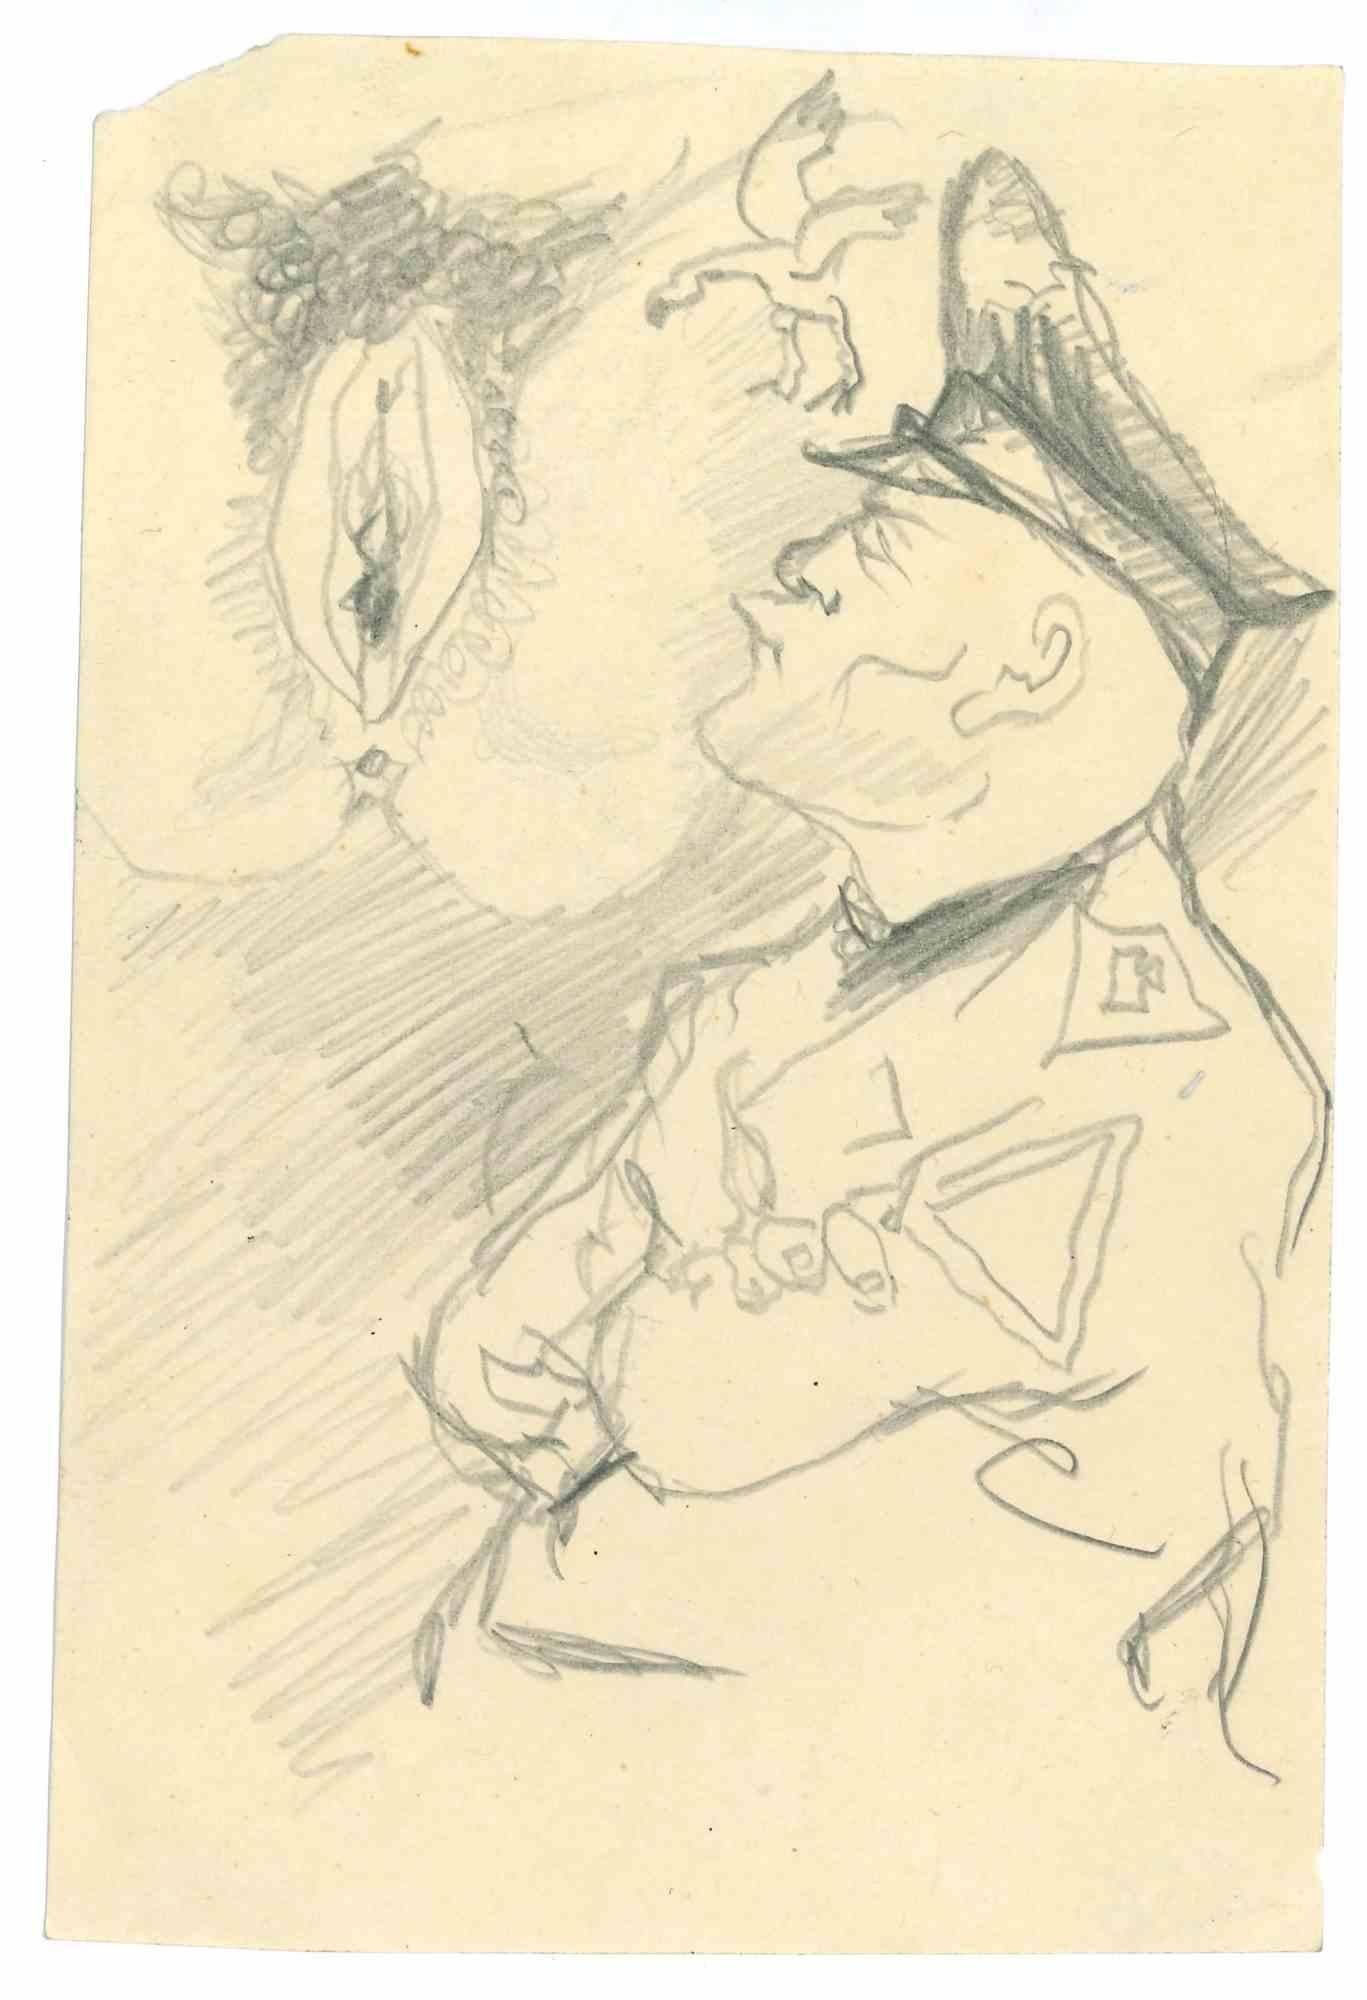 Der allgemeine erotische Traum ist eine Bleistiftzeichnung von Mino Maccari  (1924-1989) in den 1960er Jahren.

Guter Zustand.

Mino Maccari (Siena, 1924-Rom, 16. Juni 1989) war ein italienischer Schriftsteller, Maler, Graveur und Journalist, der